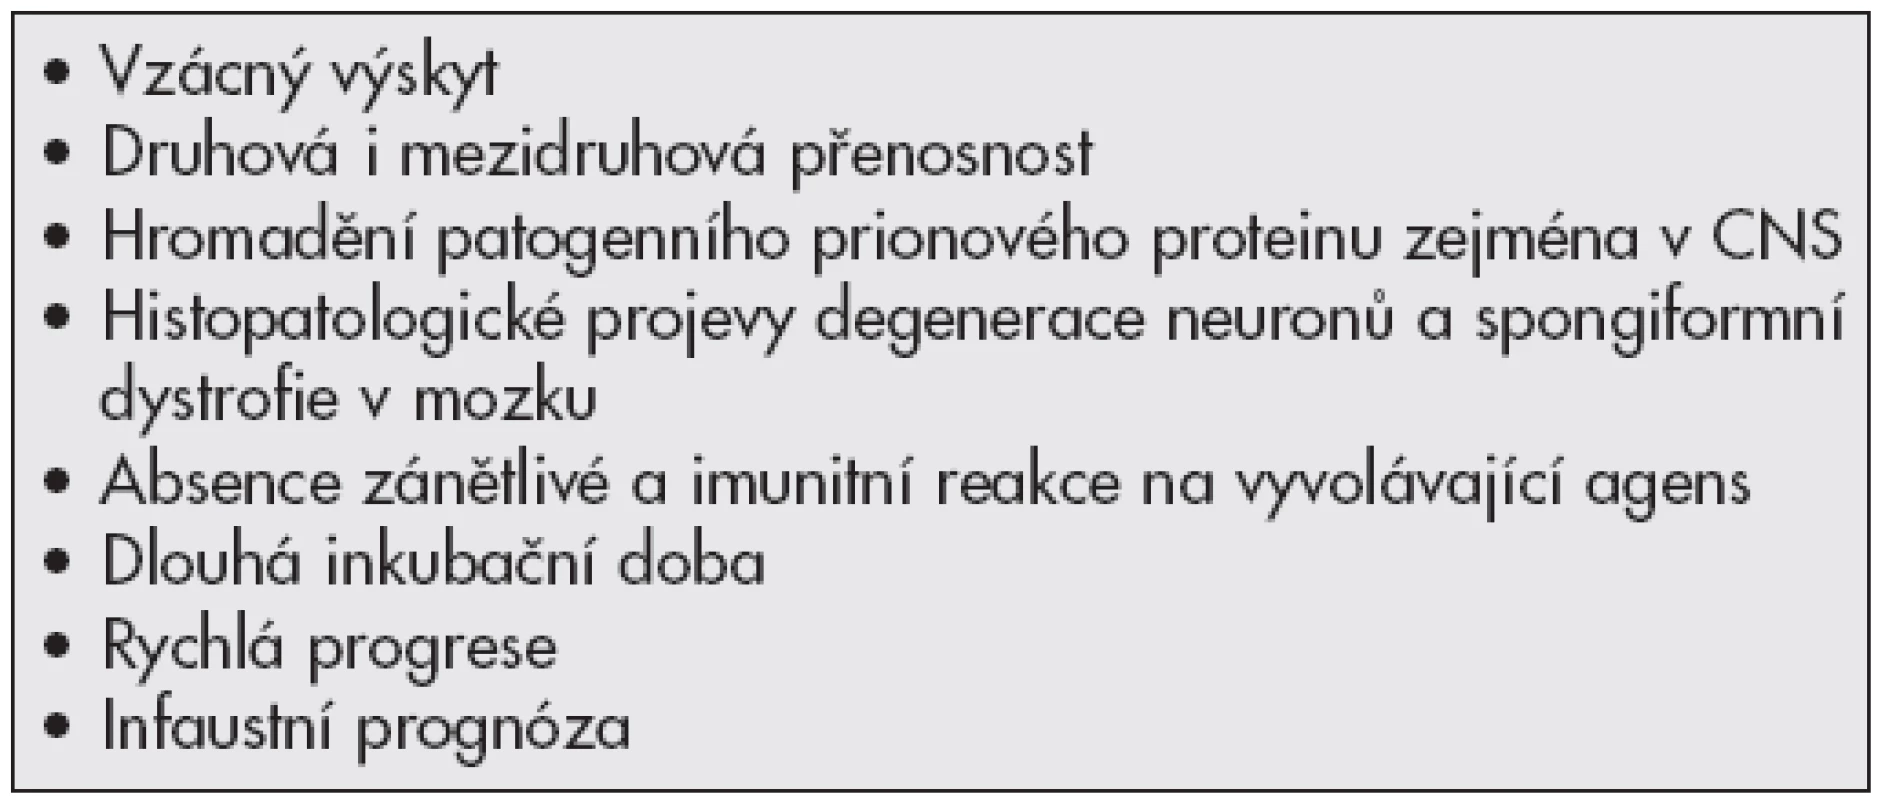 Typické znaky prionových onemocnění